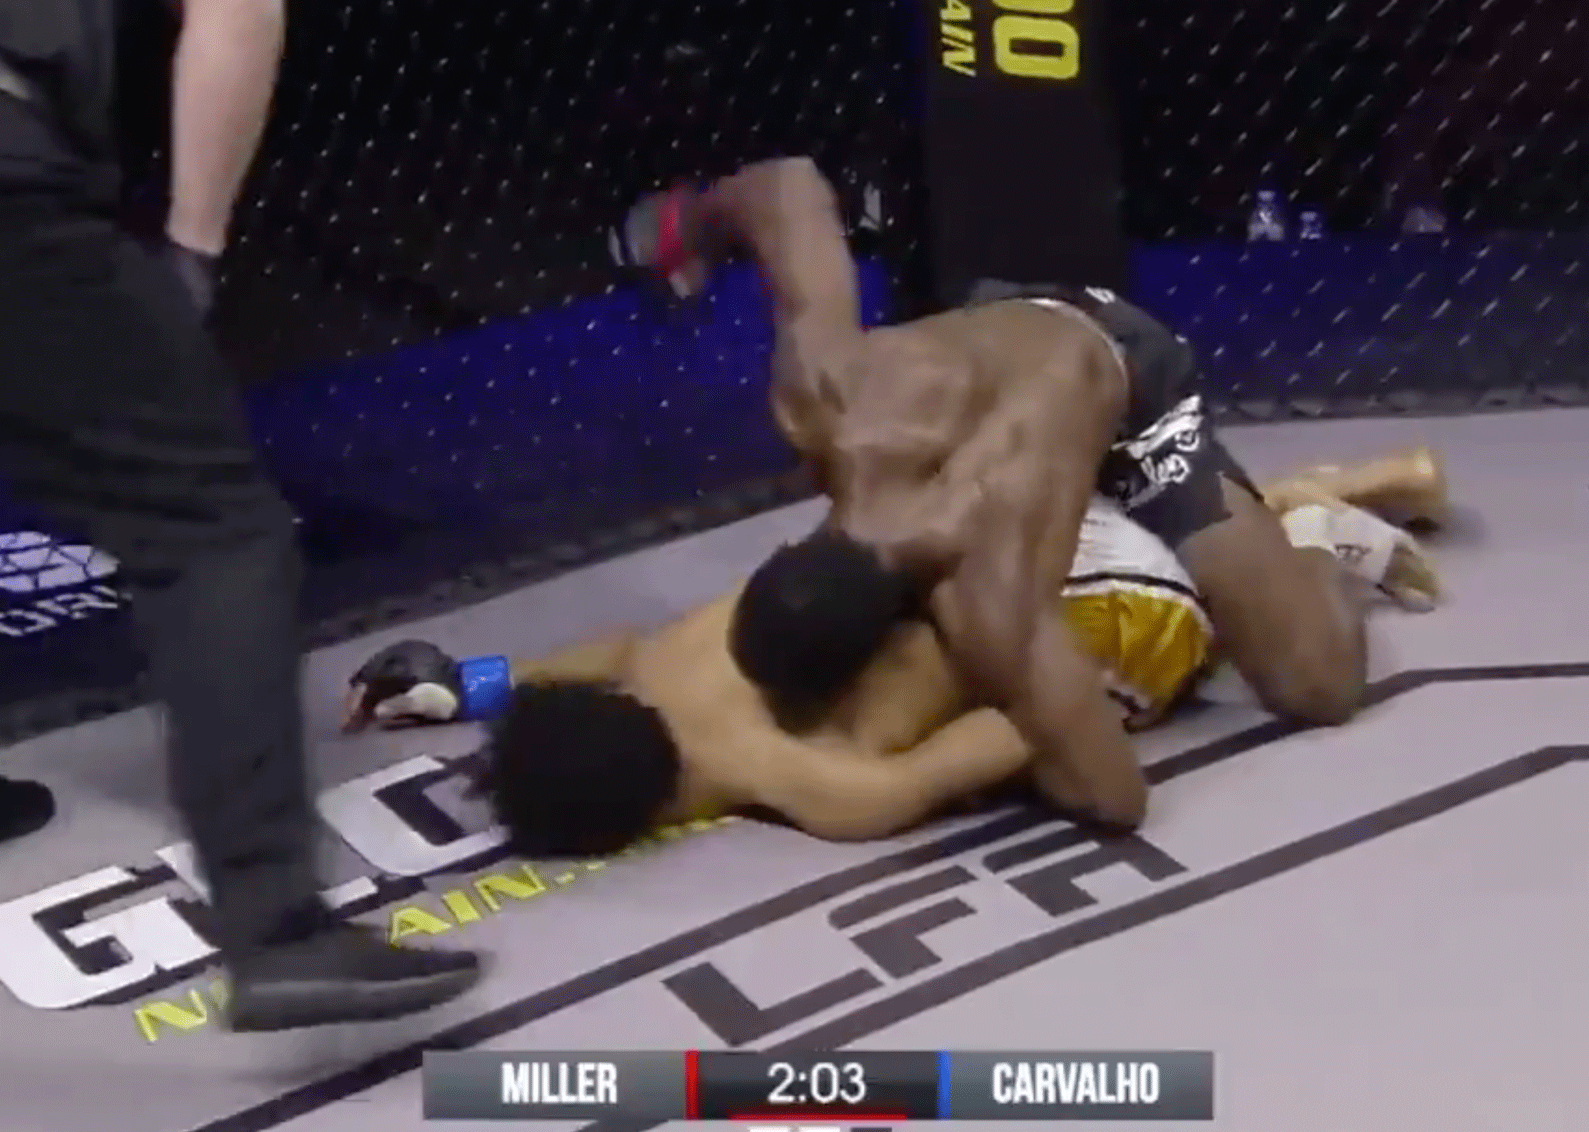 STUITERBAL: Meesterlijke knock-out tijdens bruut MMA-gevecht (video)